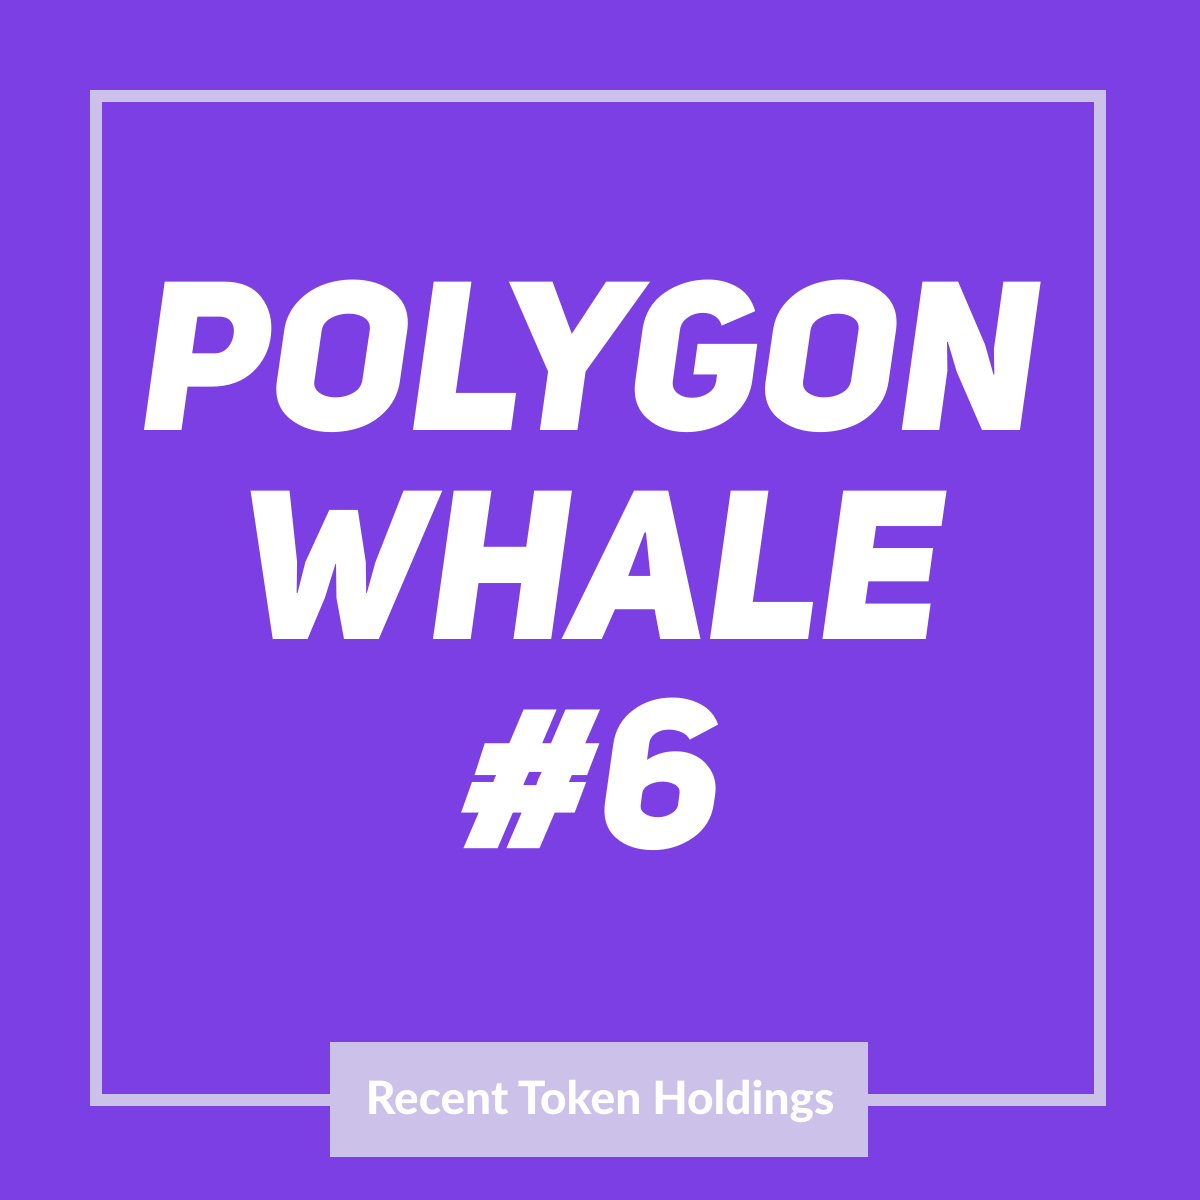 Polygon Whale #6